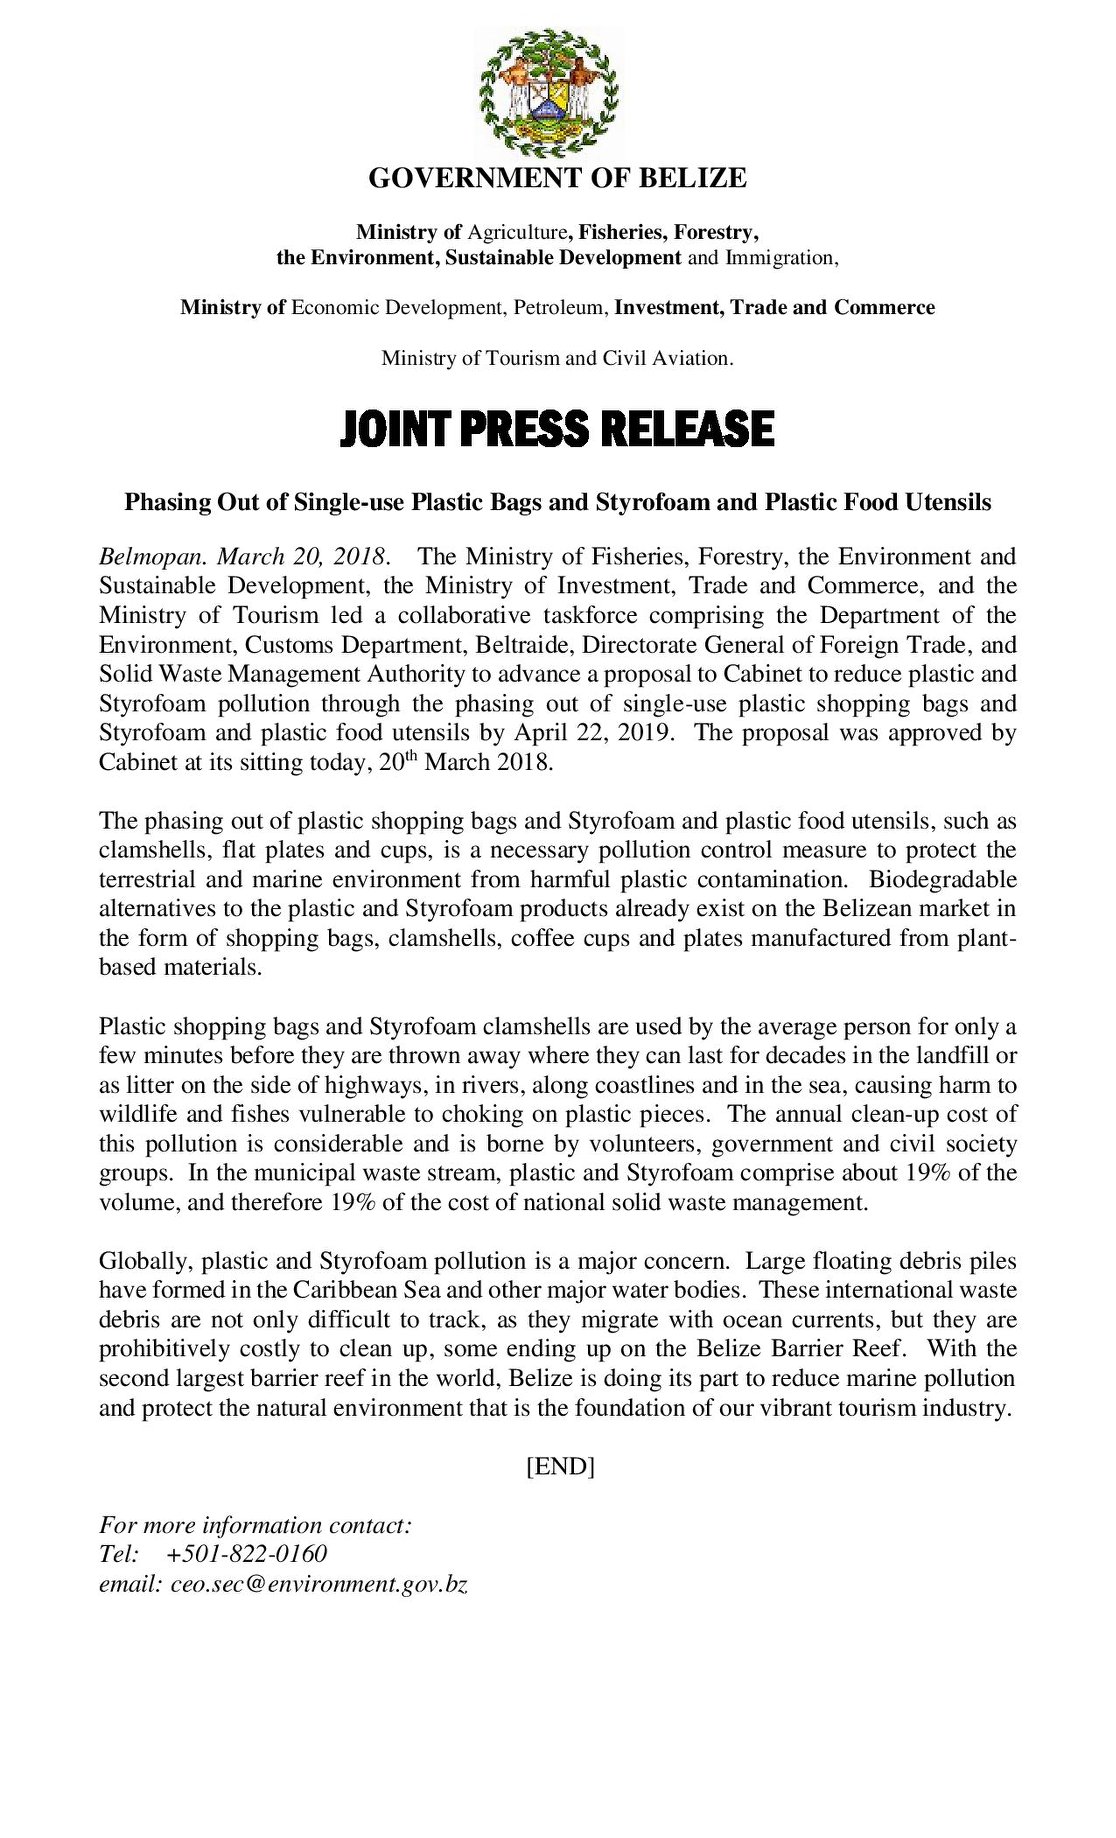 Belize styrofoam ban press release 2018